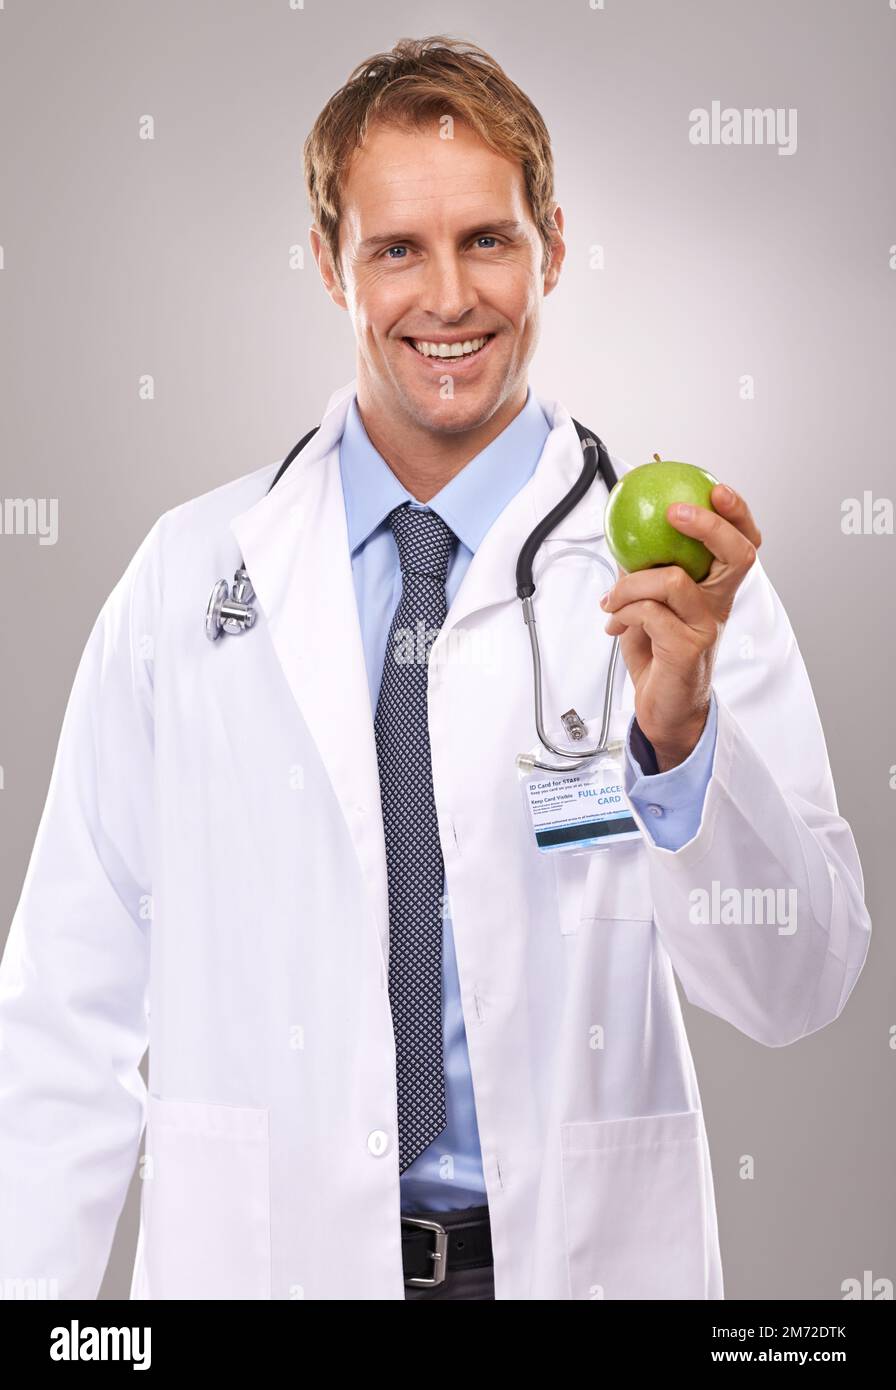 Eine pro Tag... Ärztliche Anweisung. Porträt eines gutaussehenden jungen Arztes, der einen grünen Apfel hält. Stockfoto